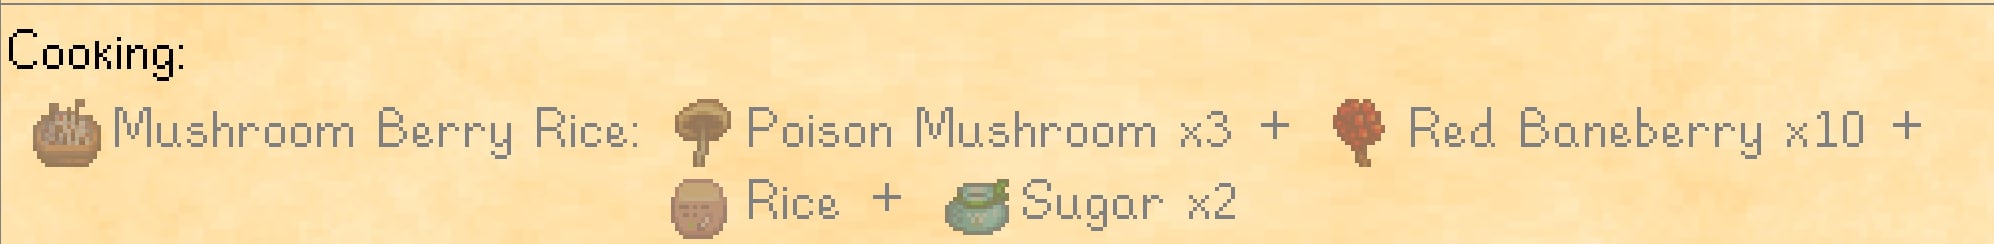 Mushroom Berry Rice